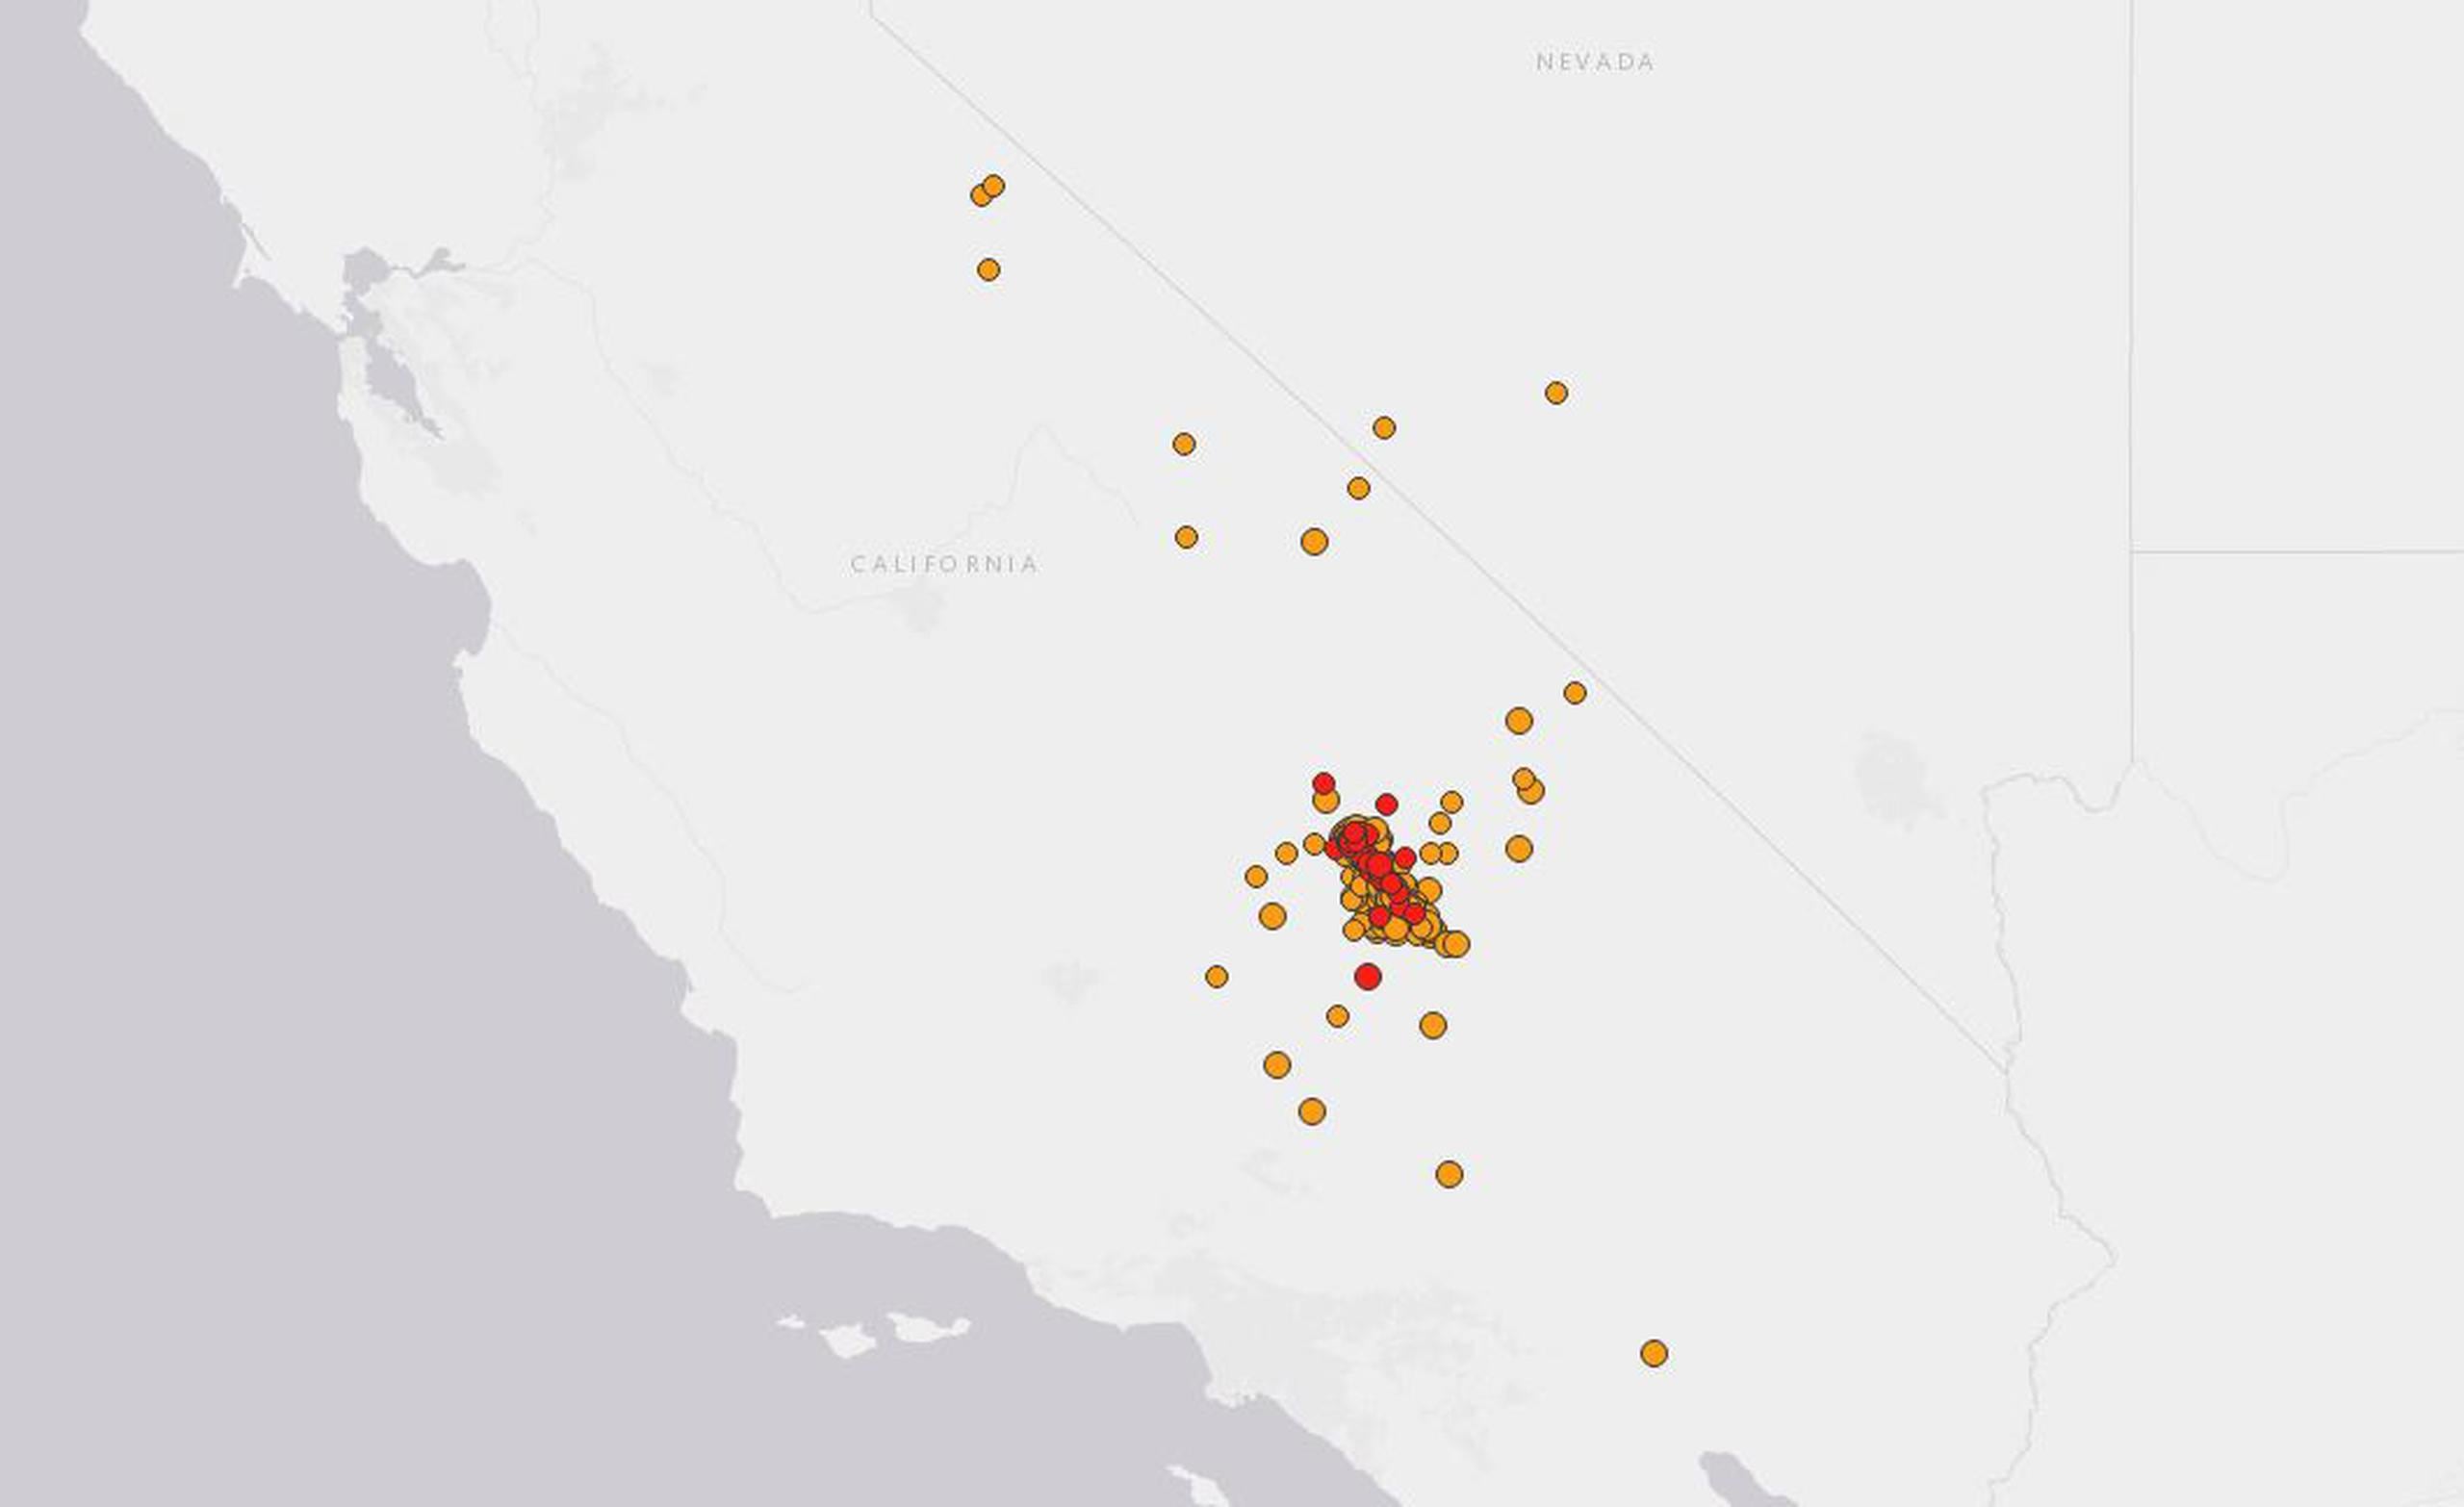 Existe una probabilidad de uno en 10 de un nuevo sismo de magnitud 7 la próxima semana, dijo la sismóloga Lucy Jones, del California Institute of Technology. (Servicio Geológico de Estados Unidos)